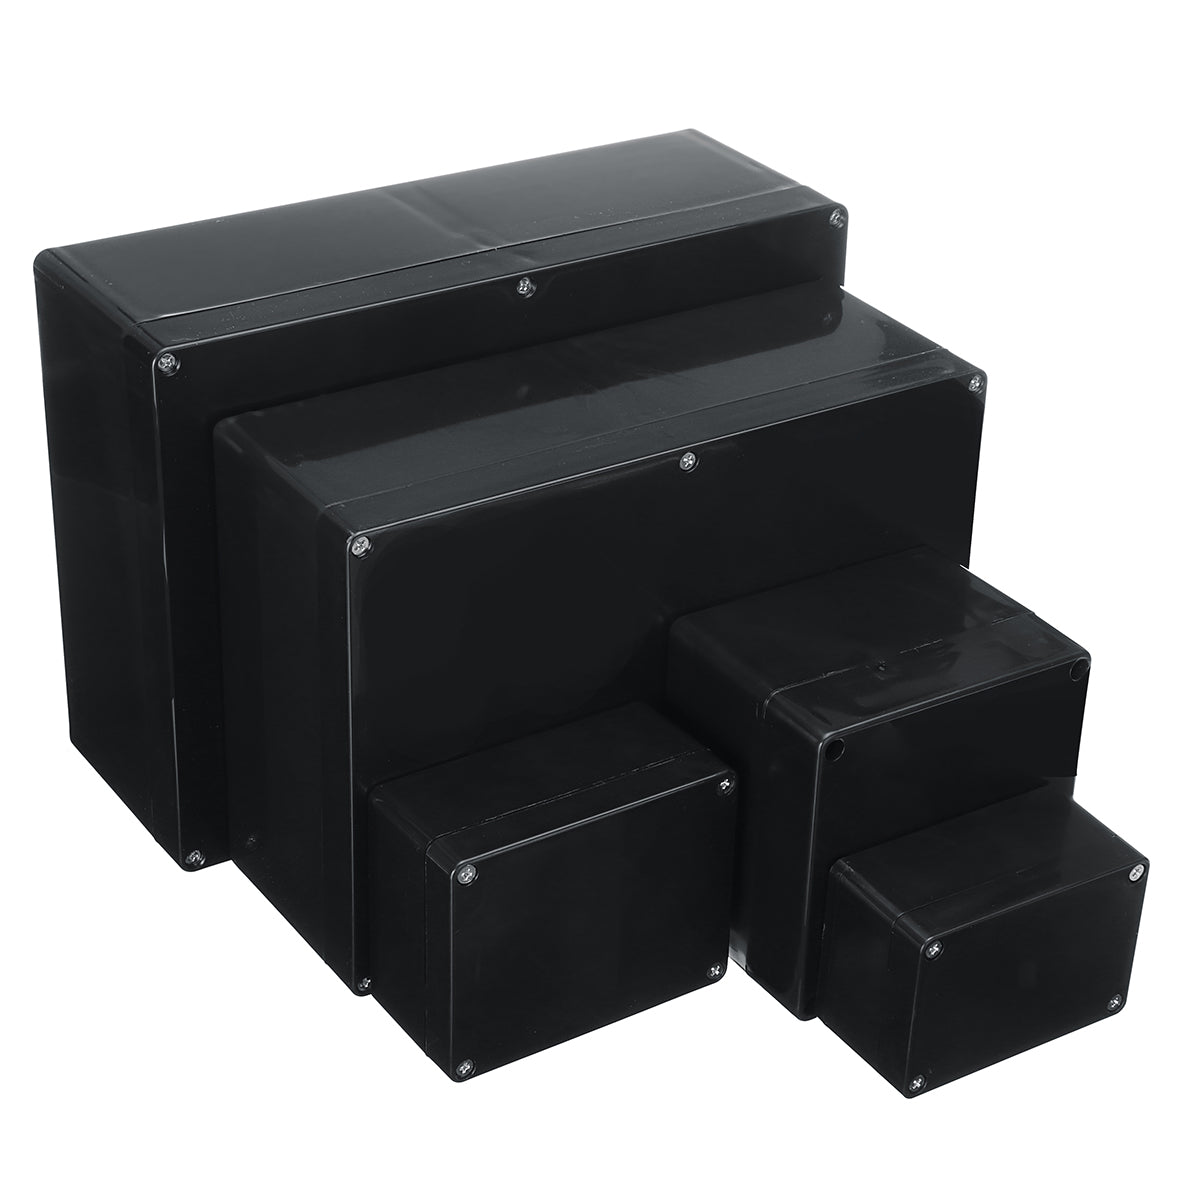 4"x3"x1.6" Project Box Black